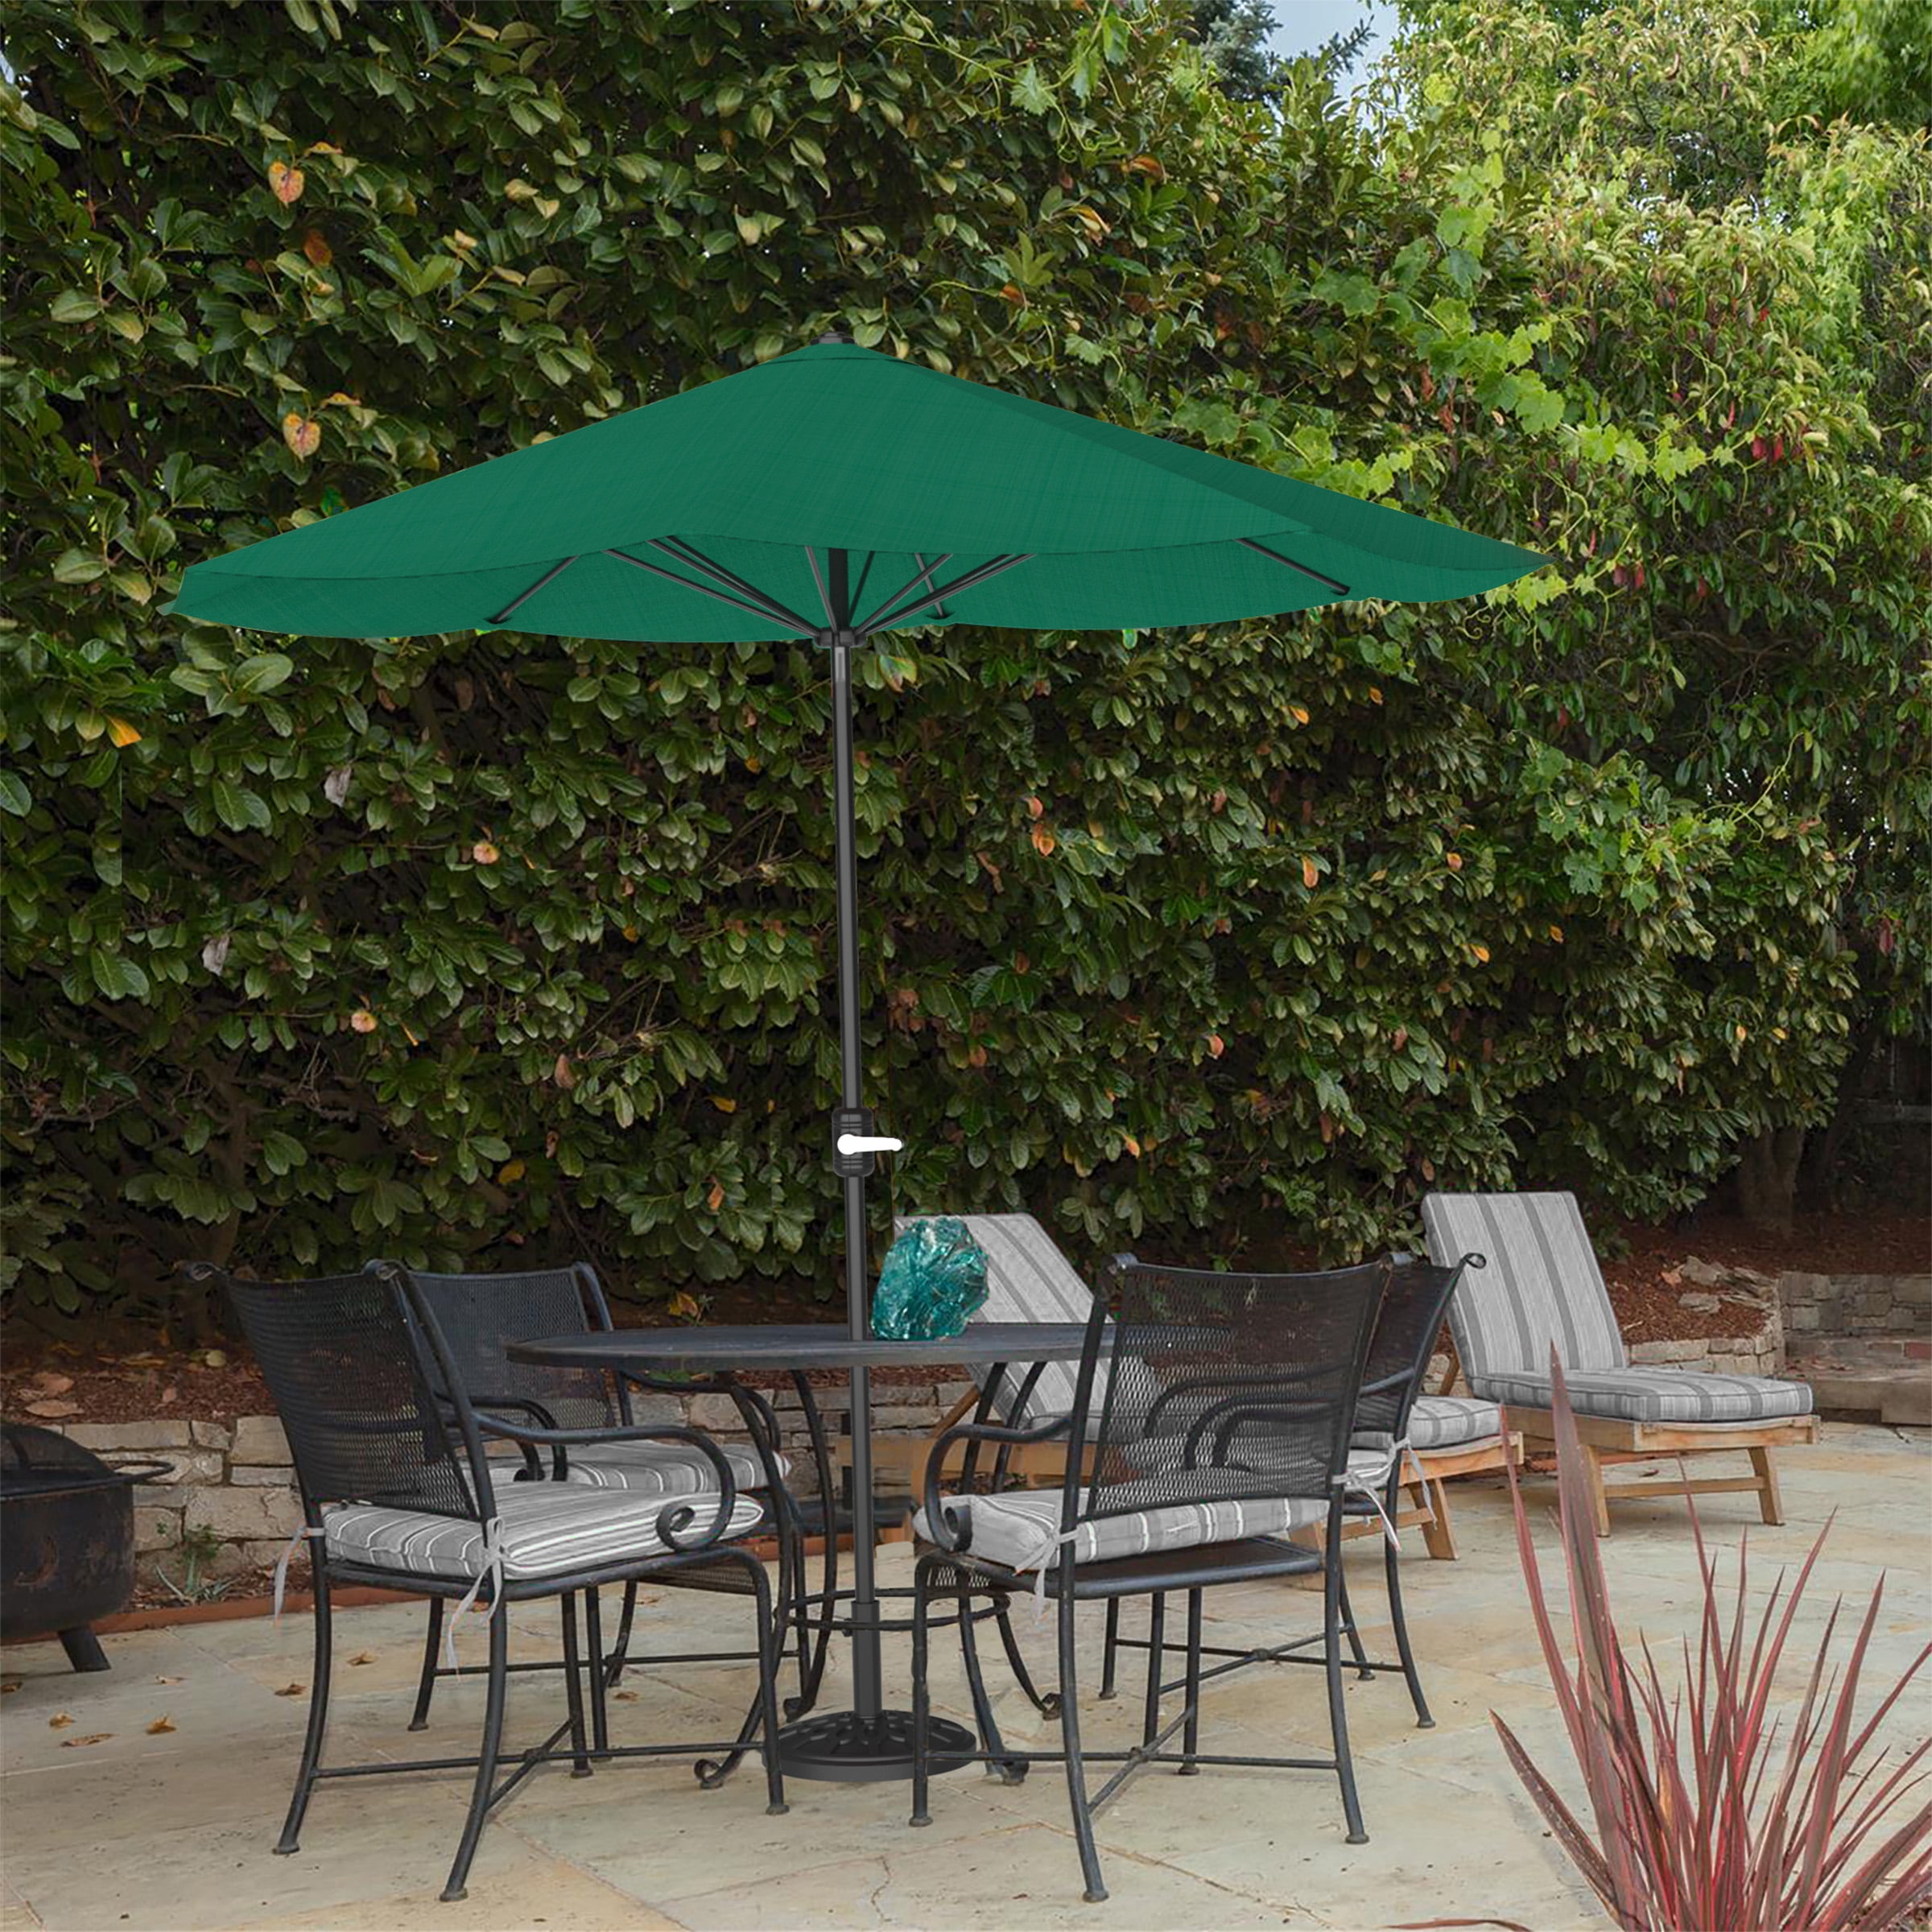 Patio Umbrella Outdoor Shade with Easy Crank Table Umbrella for Deck, Balcony, Porch, Backyard